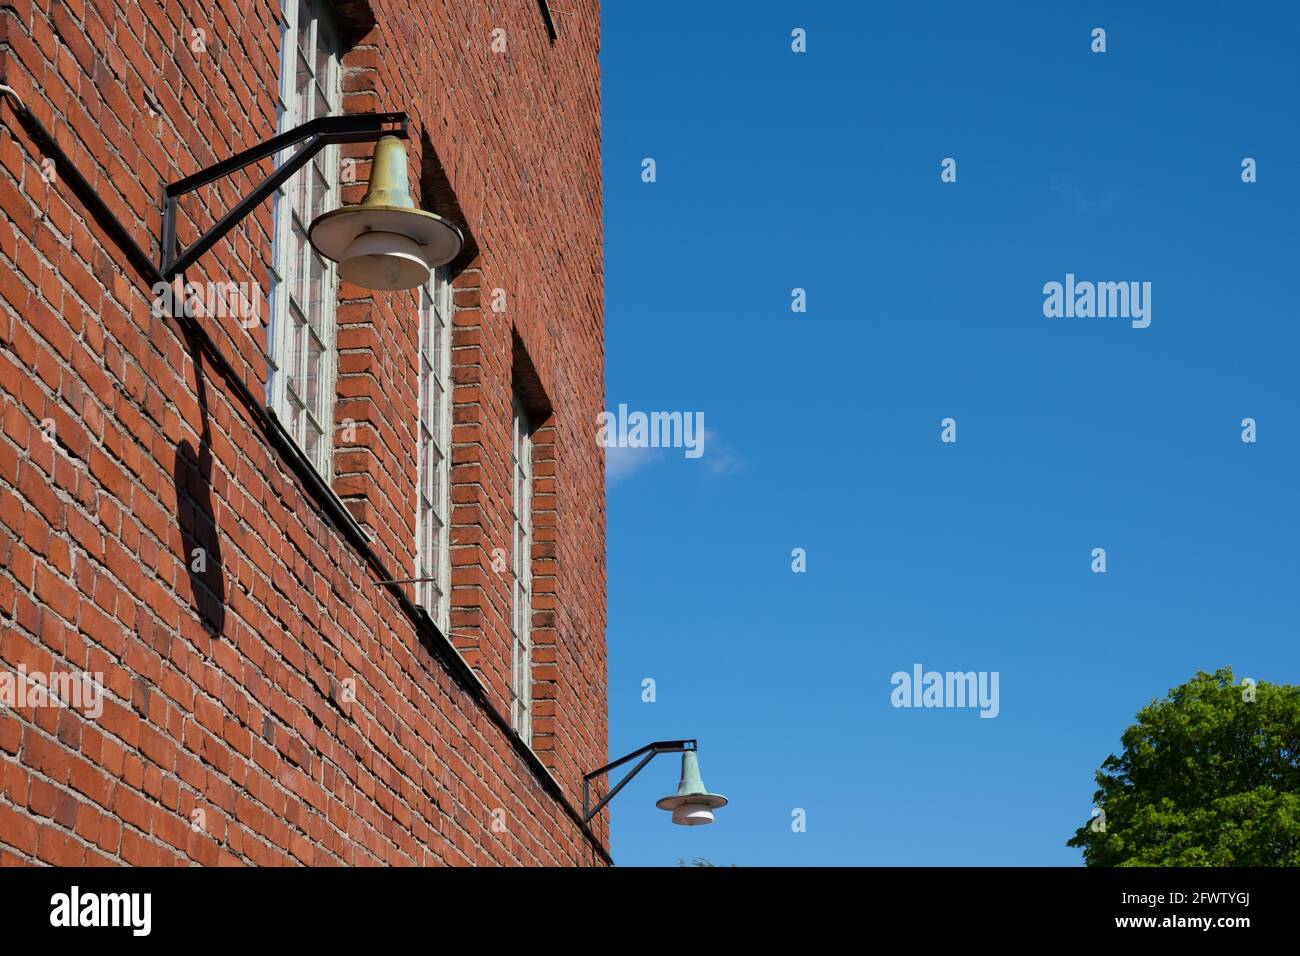 Helsinki / Finlande - 22 MAI 2021 : un lampadaire à gaz vintage suspendu à un mur en briques rouges. Banque D'Images